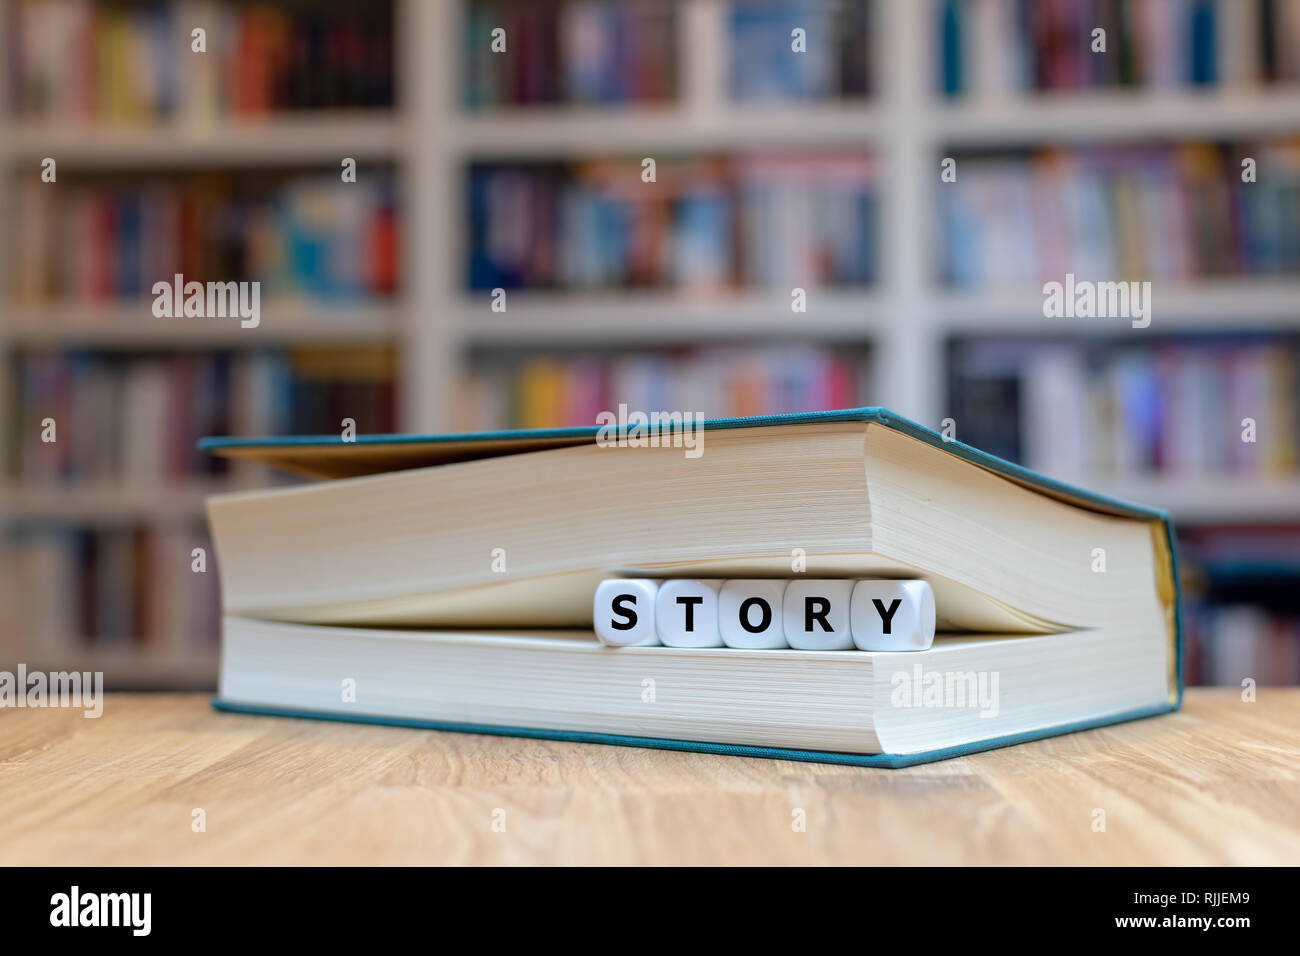 Dés dans un livre forment le mot 'cas'. Livre est couchée sur un bureau en bois d'une bibliothèque. Banque D'Images